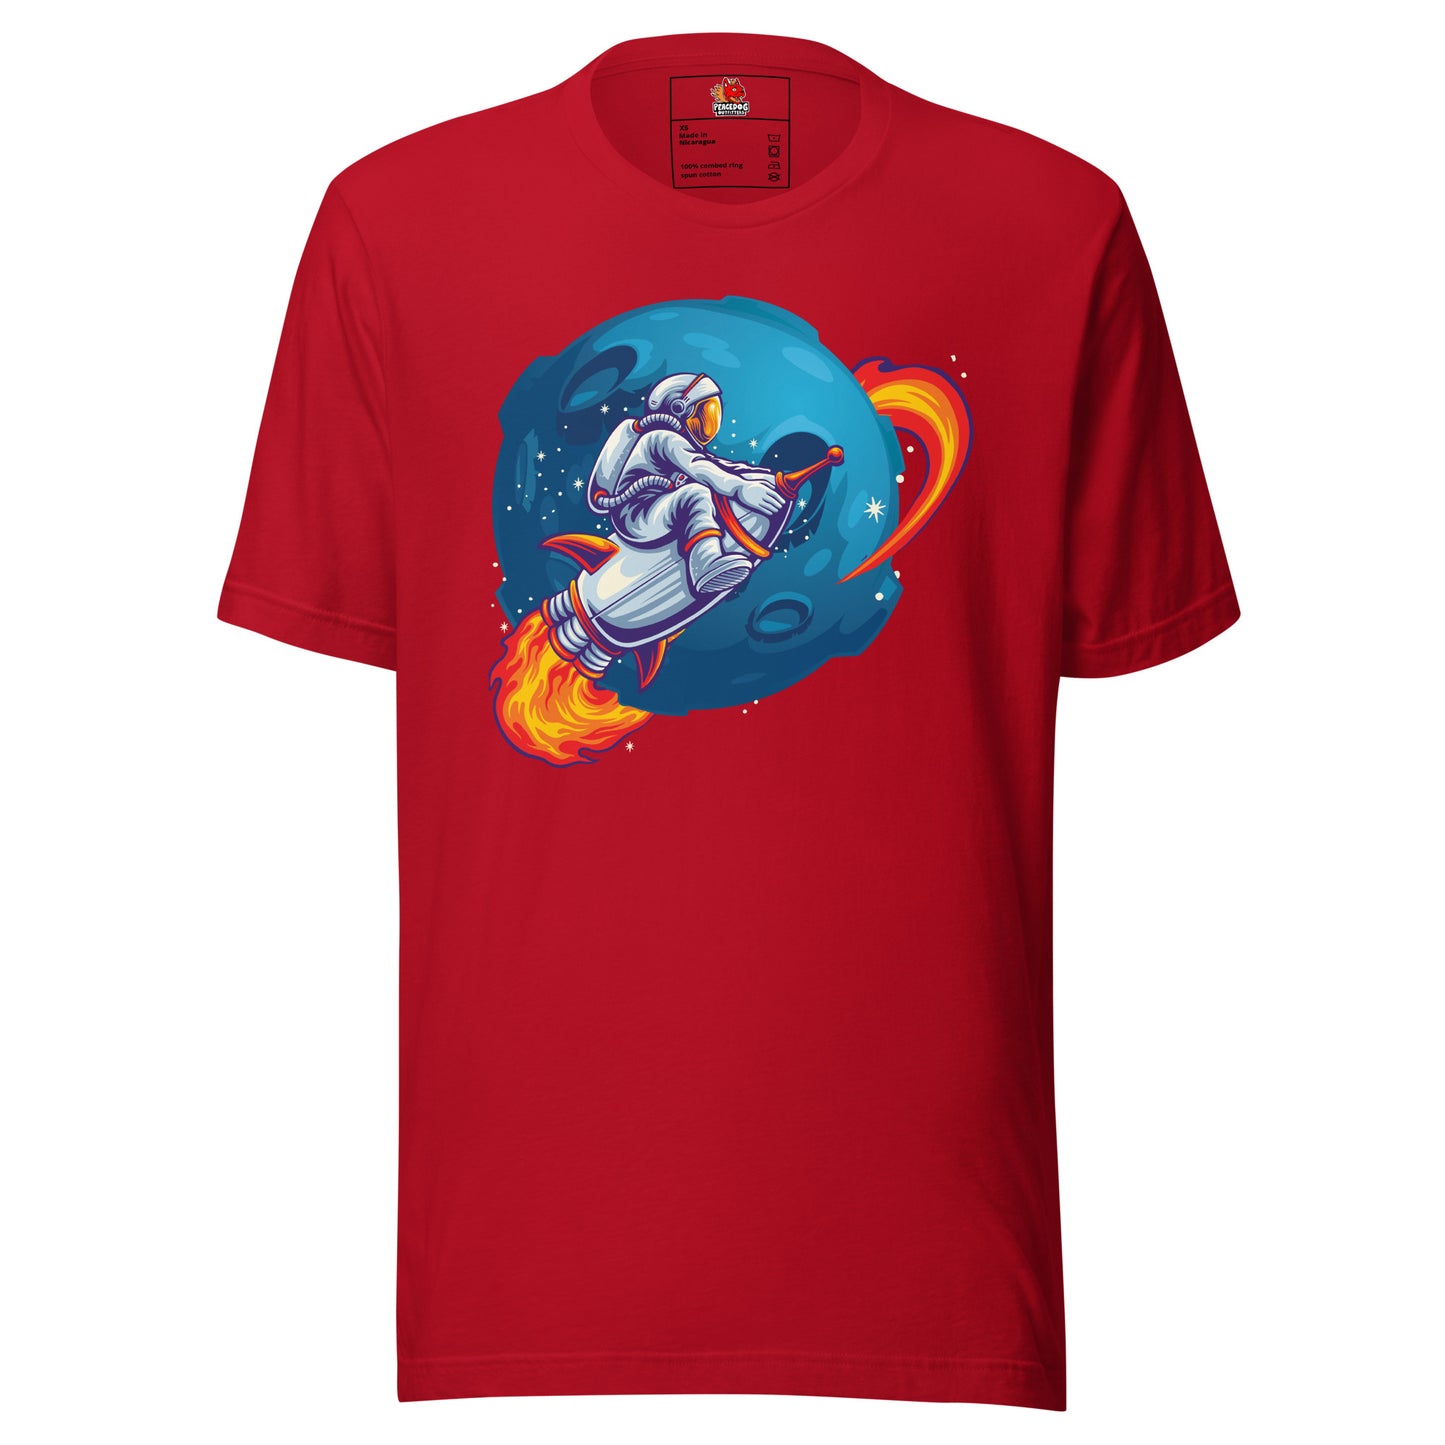 Astronaut on a Rocket T-shirt